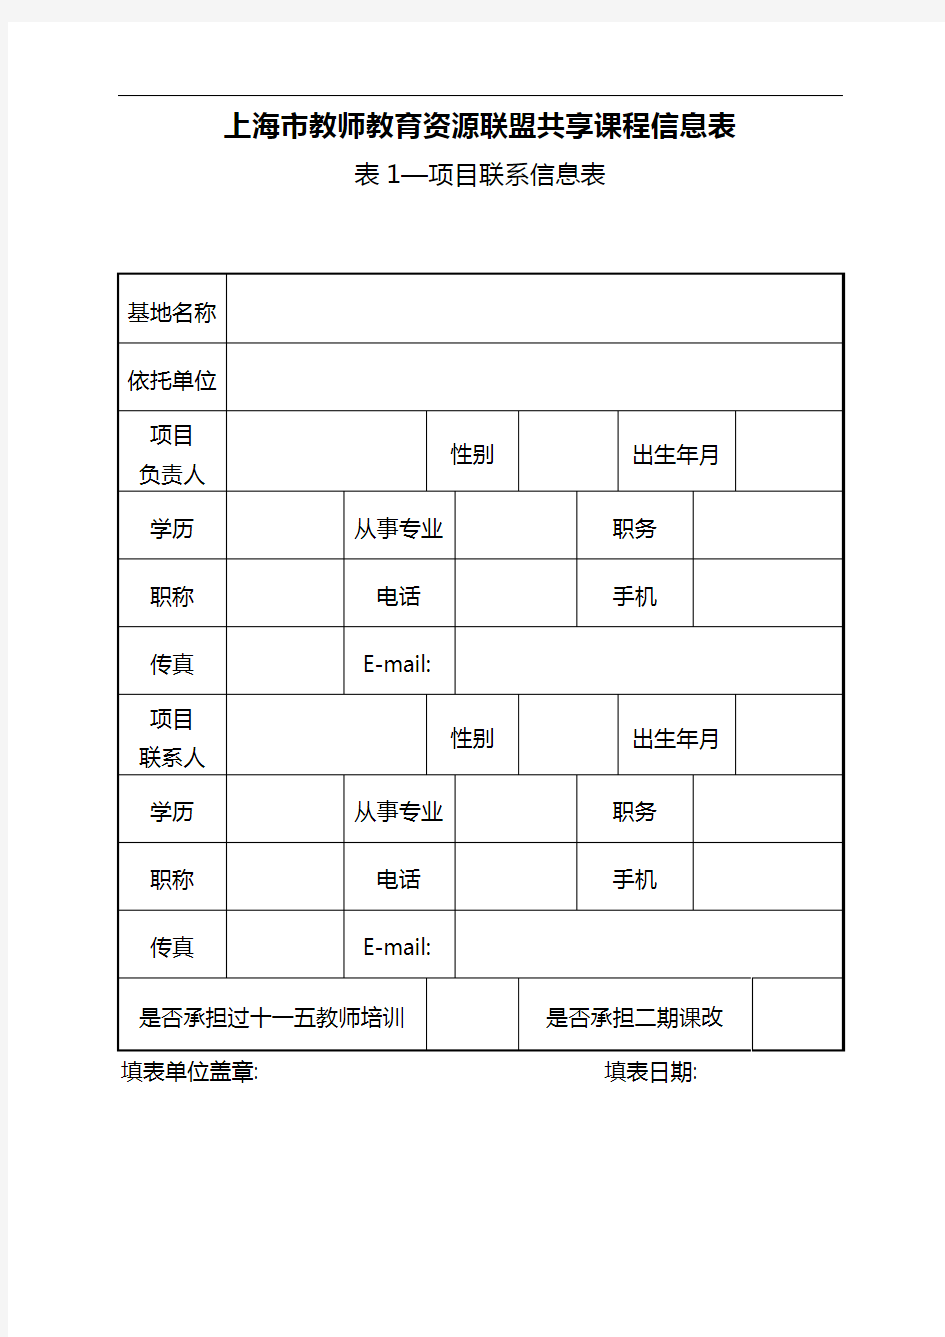 上海市教师教育资源联盟共享课程信息表